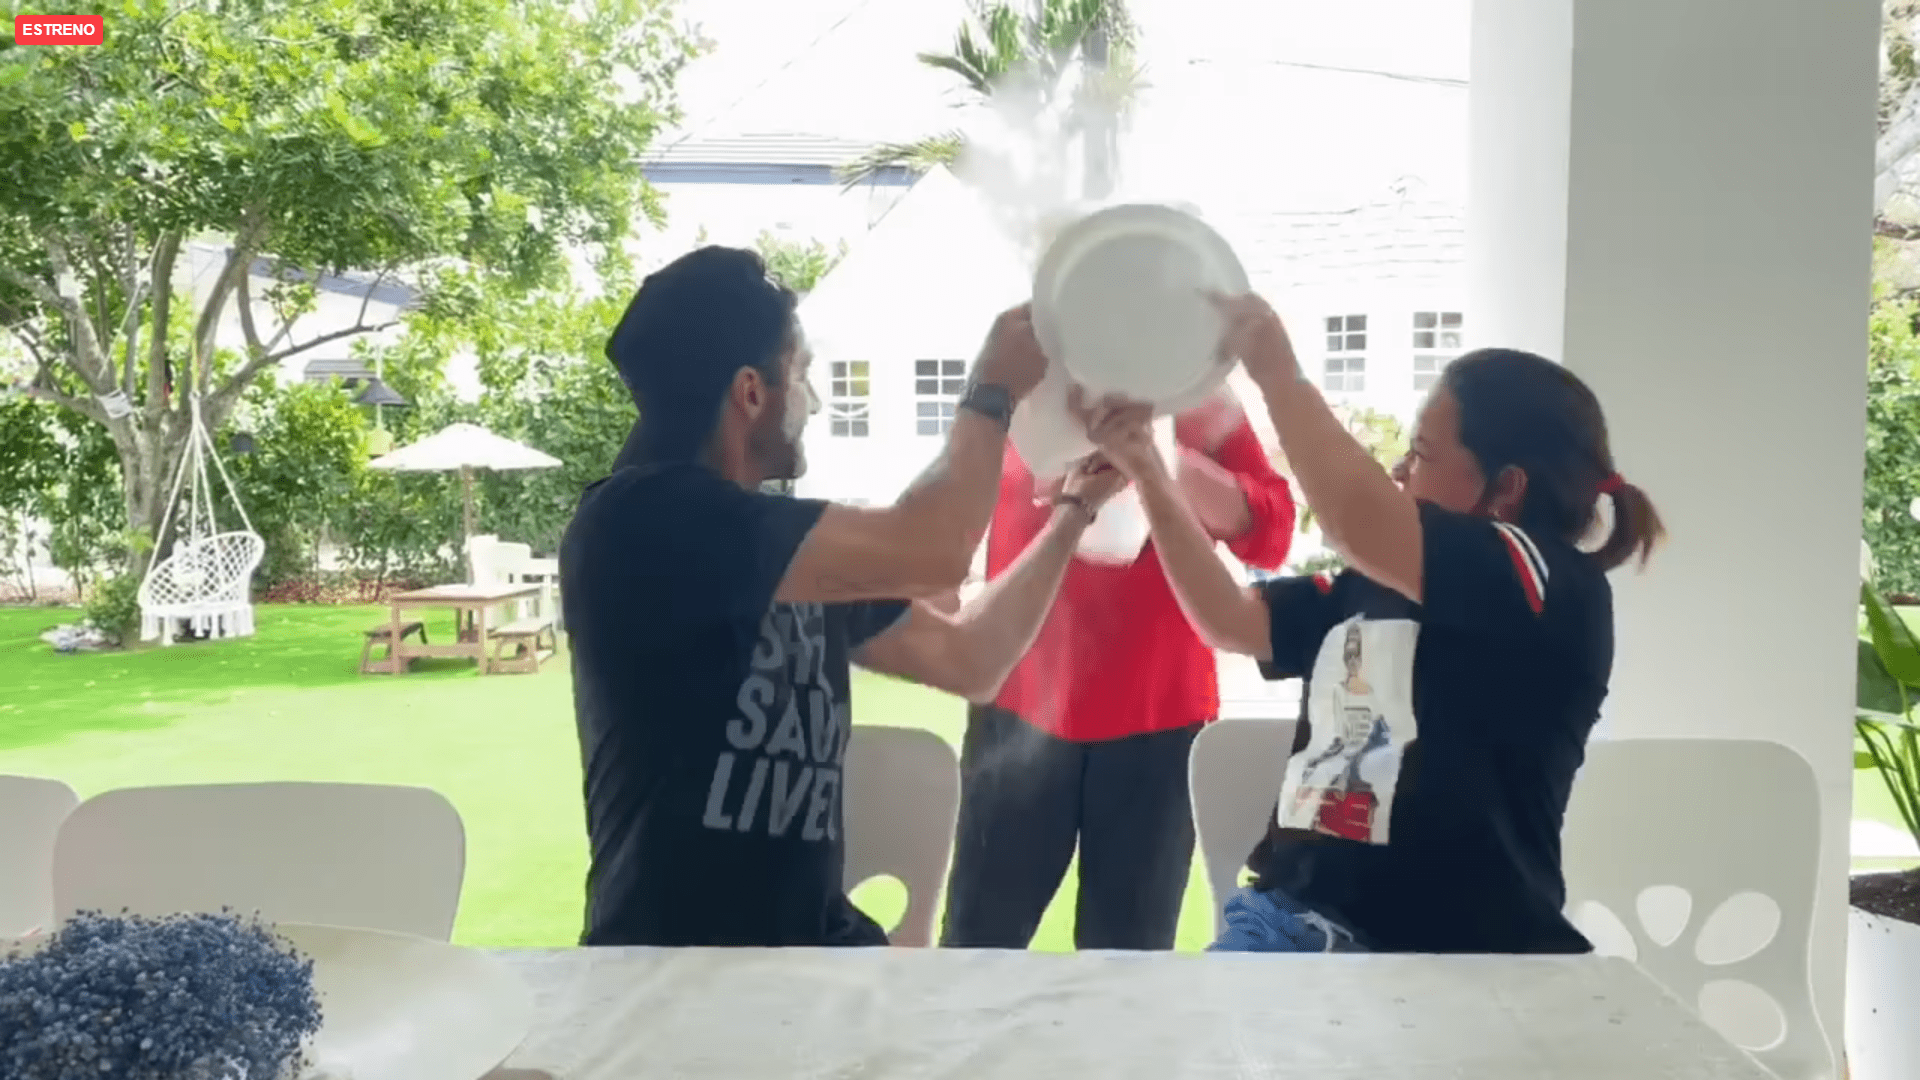 Toni Costa y Adamari López lanzan el contenido de los platos de harina a la desprevenida madre de él. | Foto: Facebook/Toni Costa